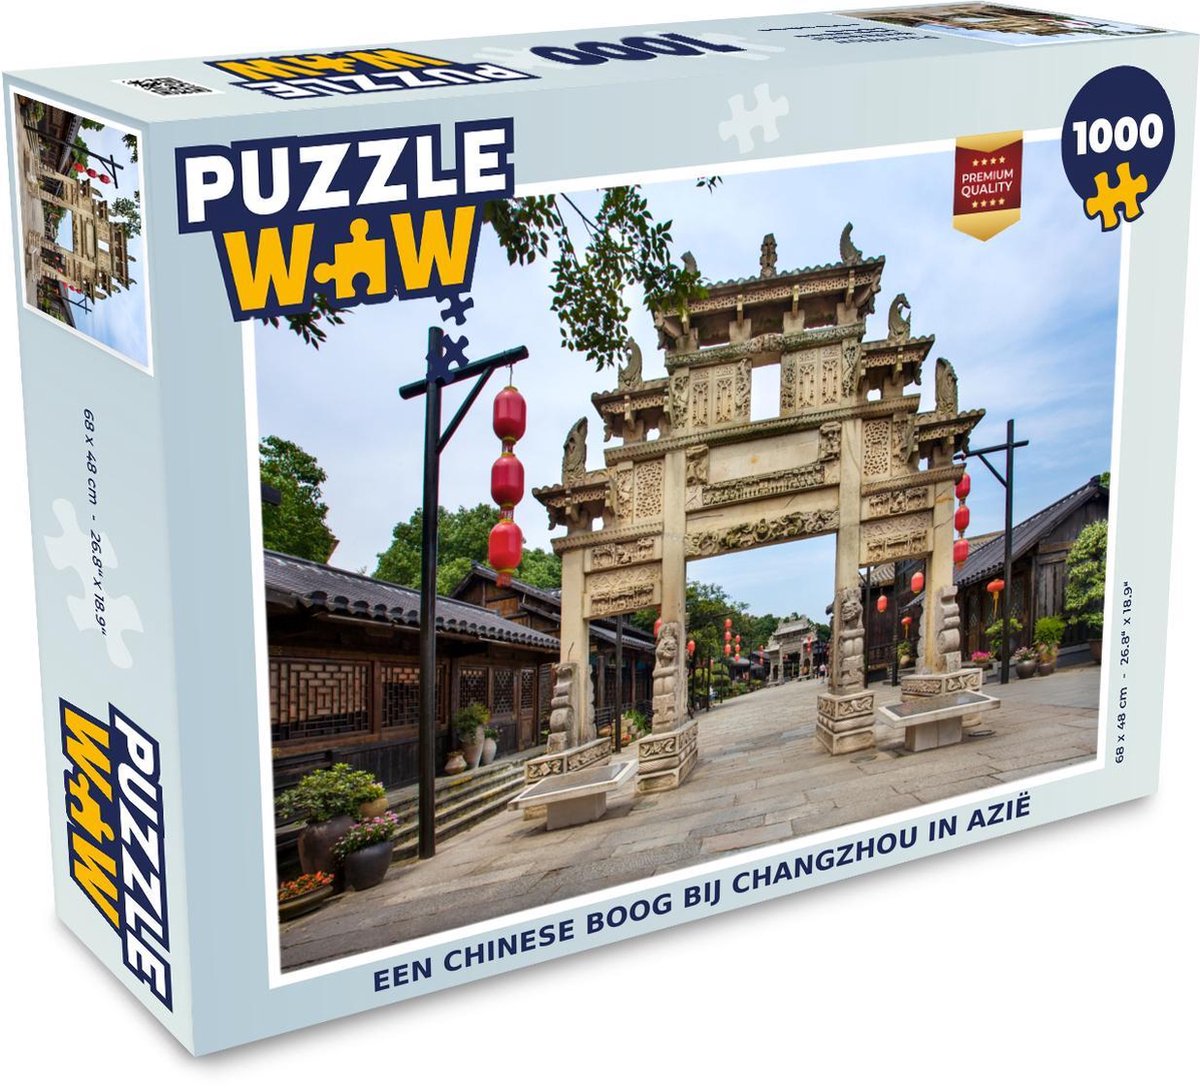 Afbeelding van product Puzzel 1000 stukjes volwassenen Changzhou 1000 stukjes - Een chinese boog bij Changzhou in Azië - PuzzleWow heeft +100000 puzzels